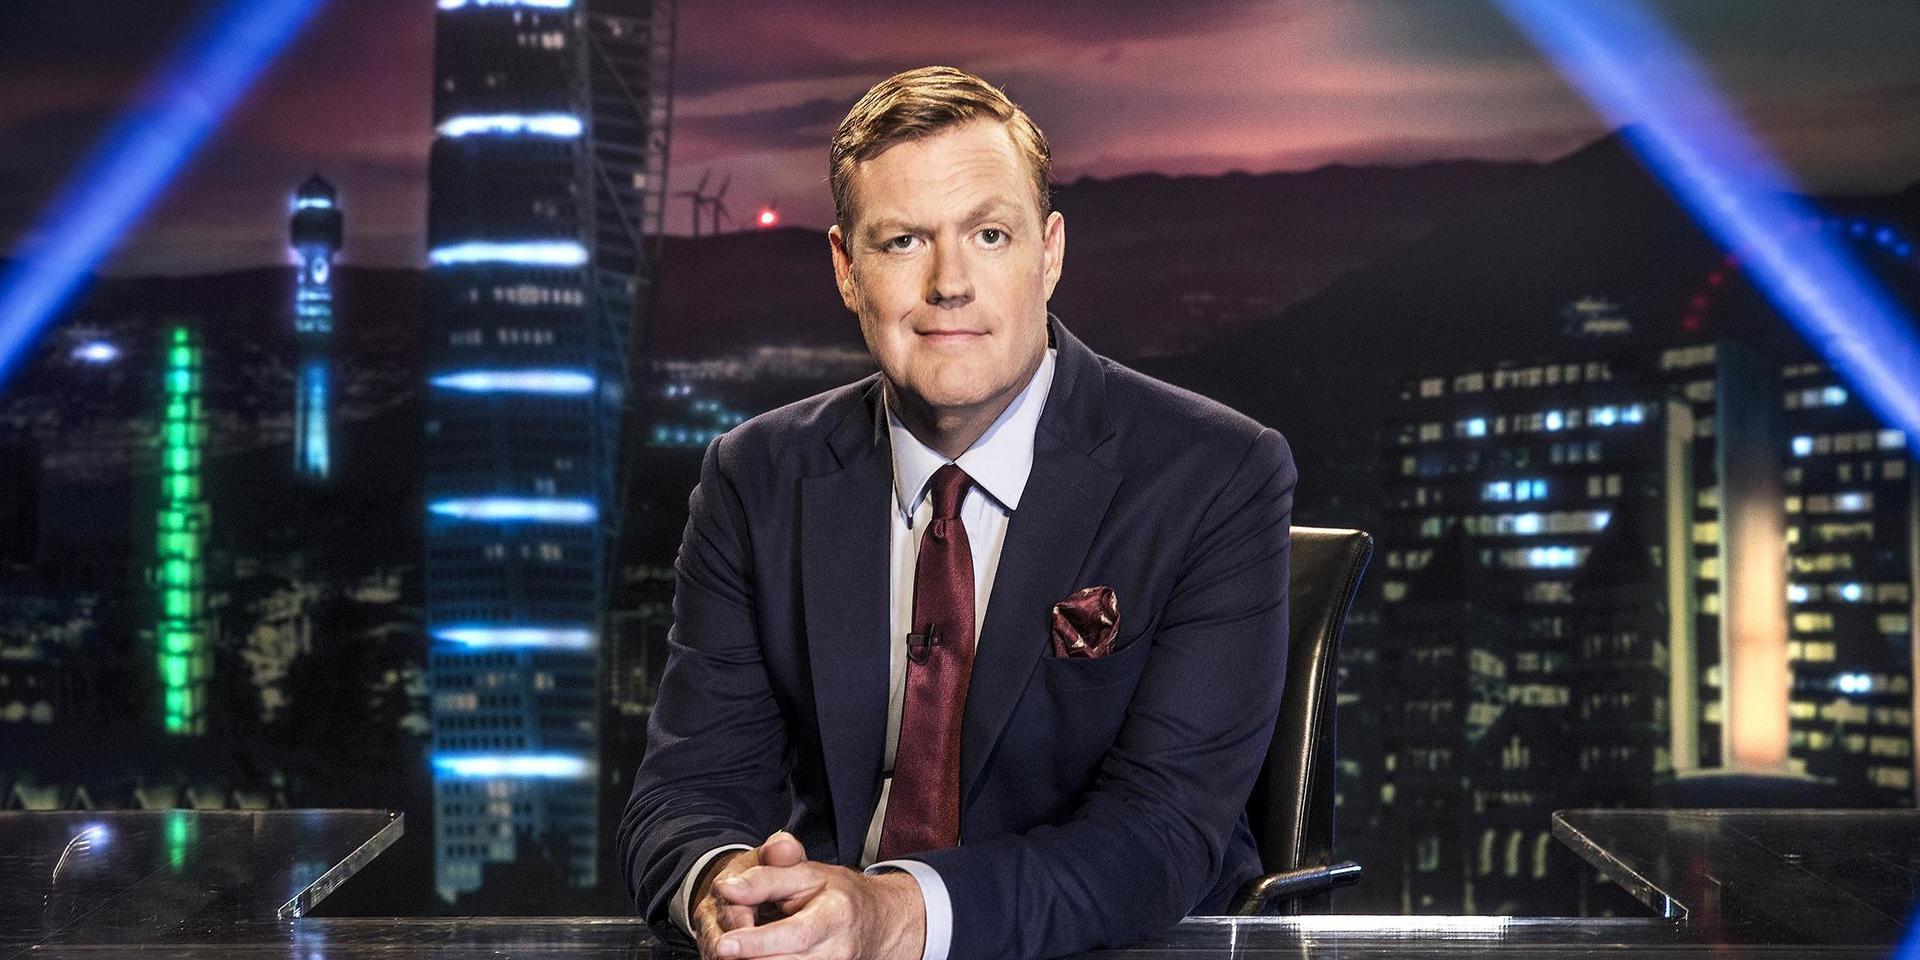 Kristoffer Appelquist leder satirprogrammet ”Svenska nyheter” för fjärde säsongen.